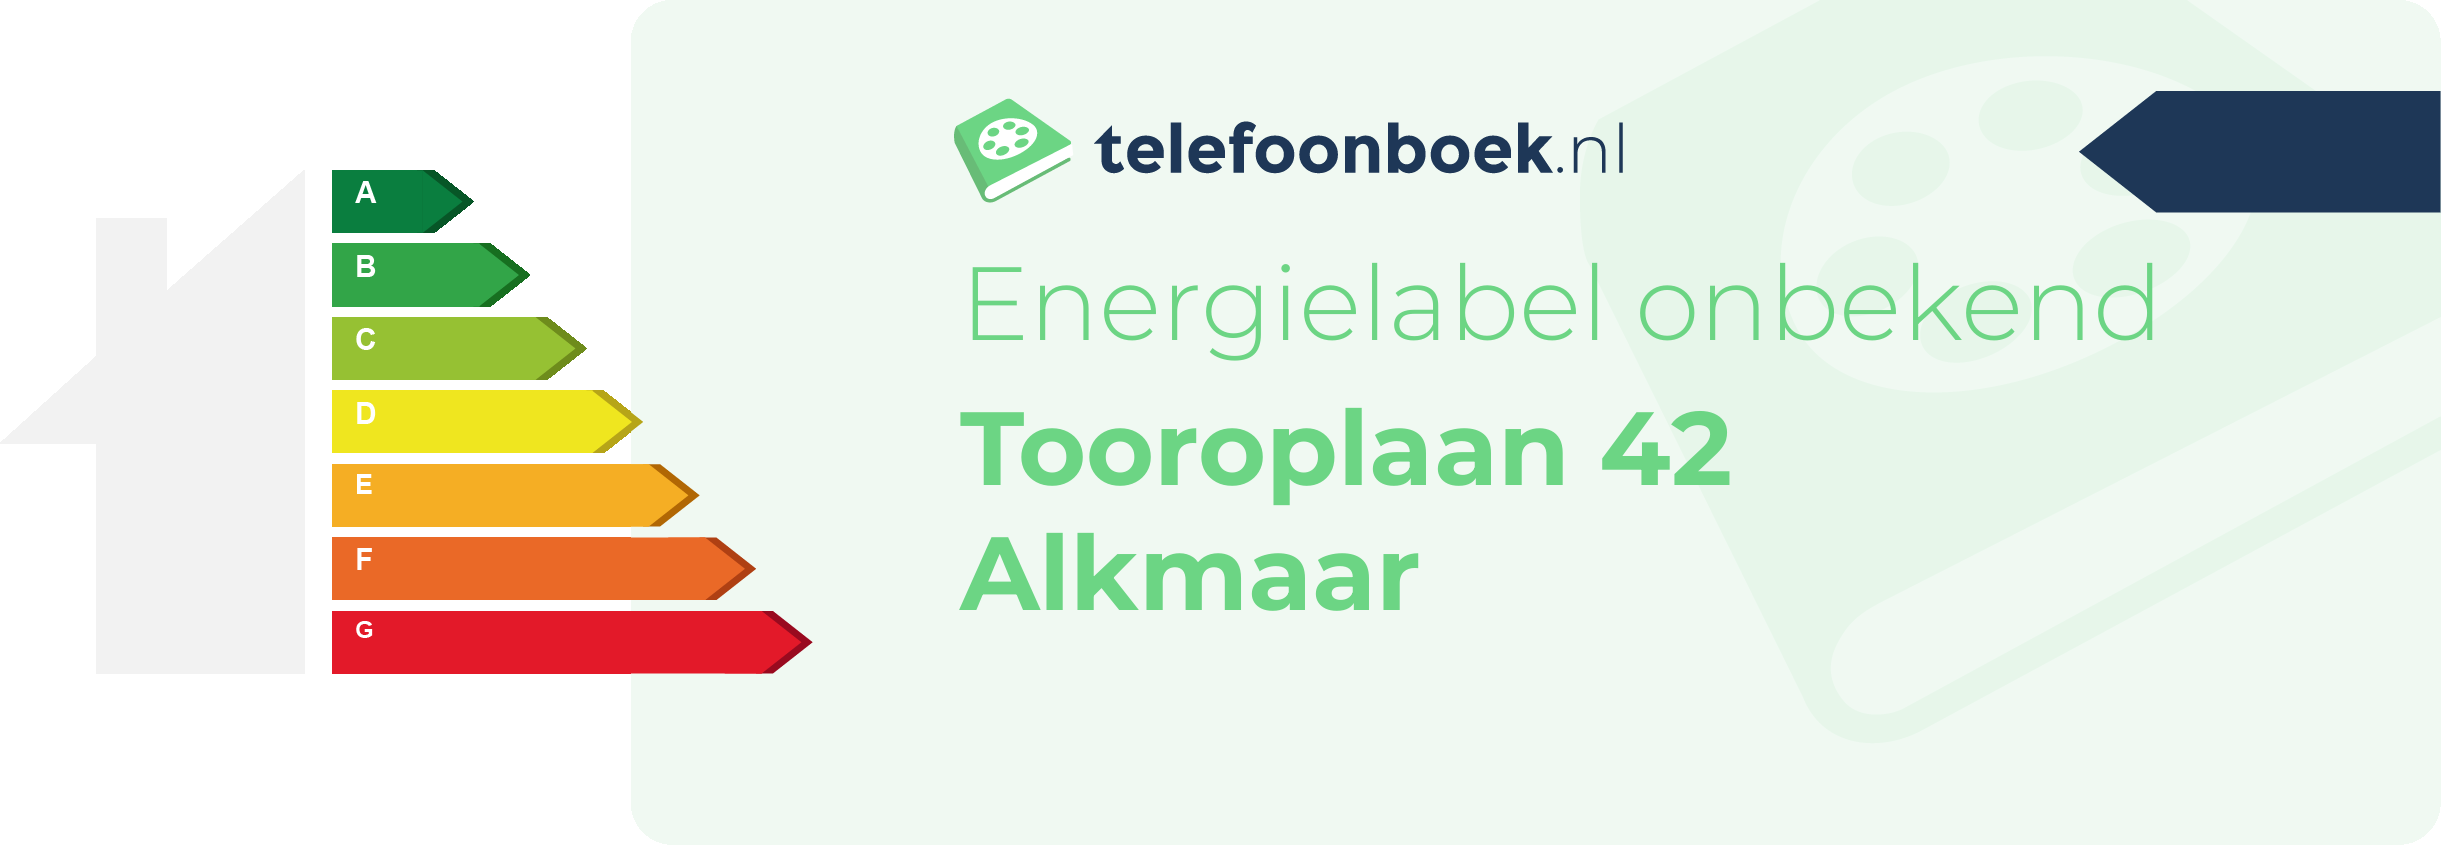 Energielabel Tooroplaan 42 Alkmaar